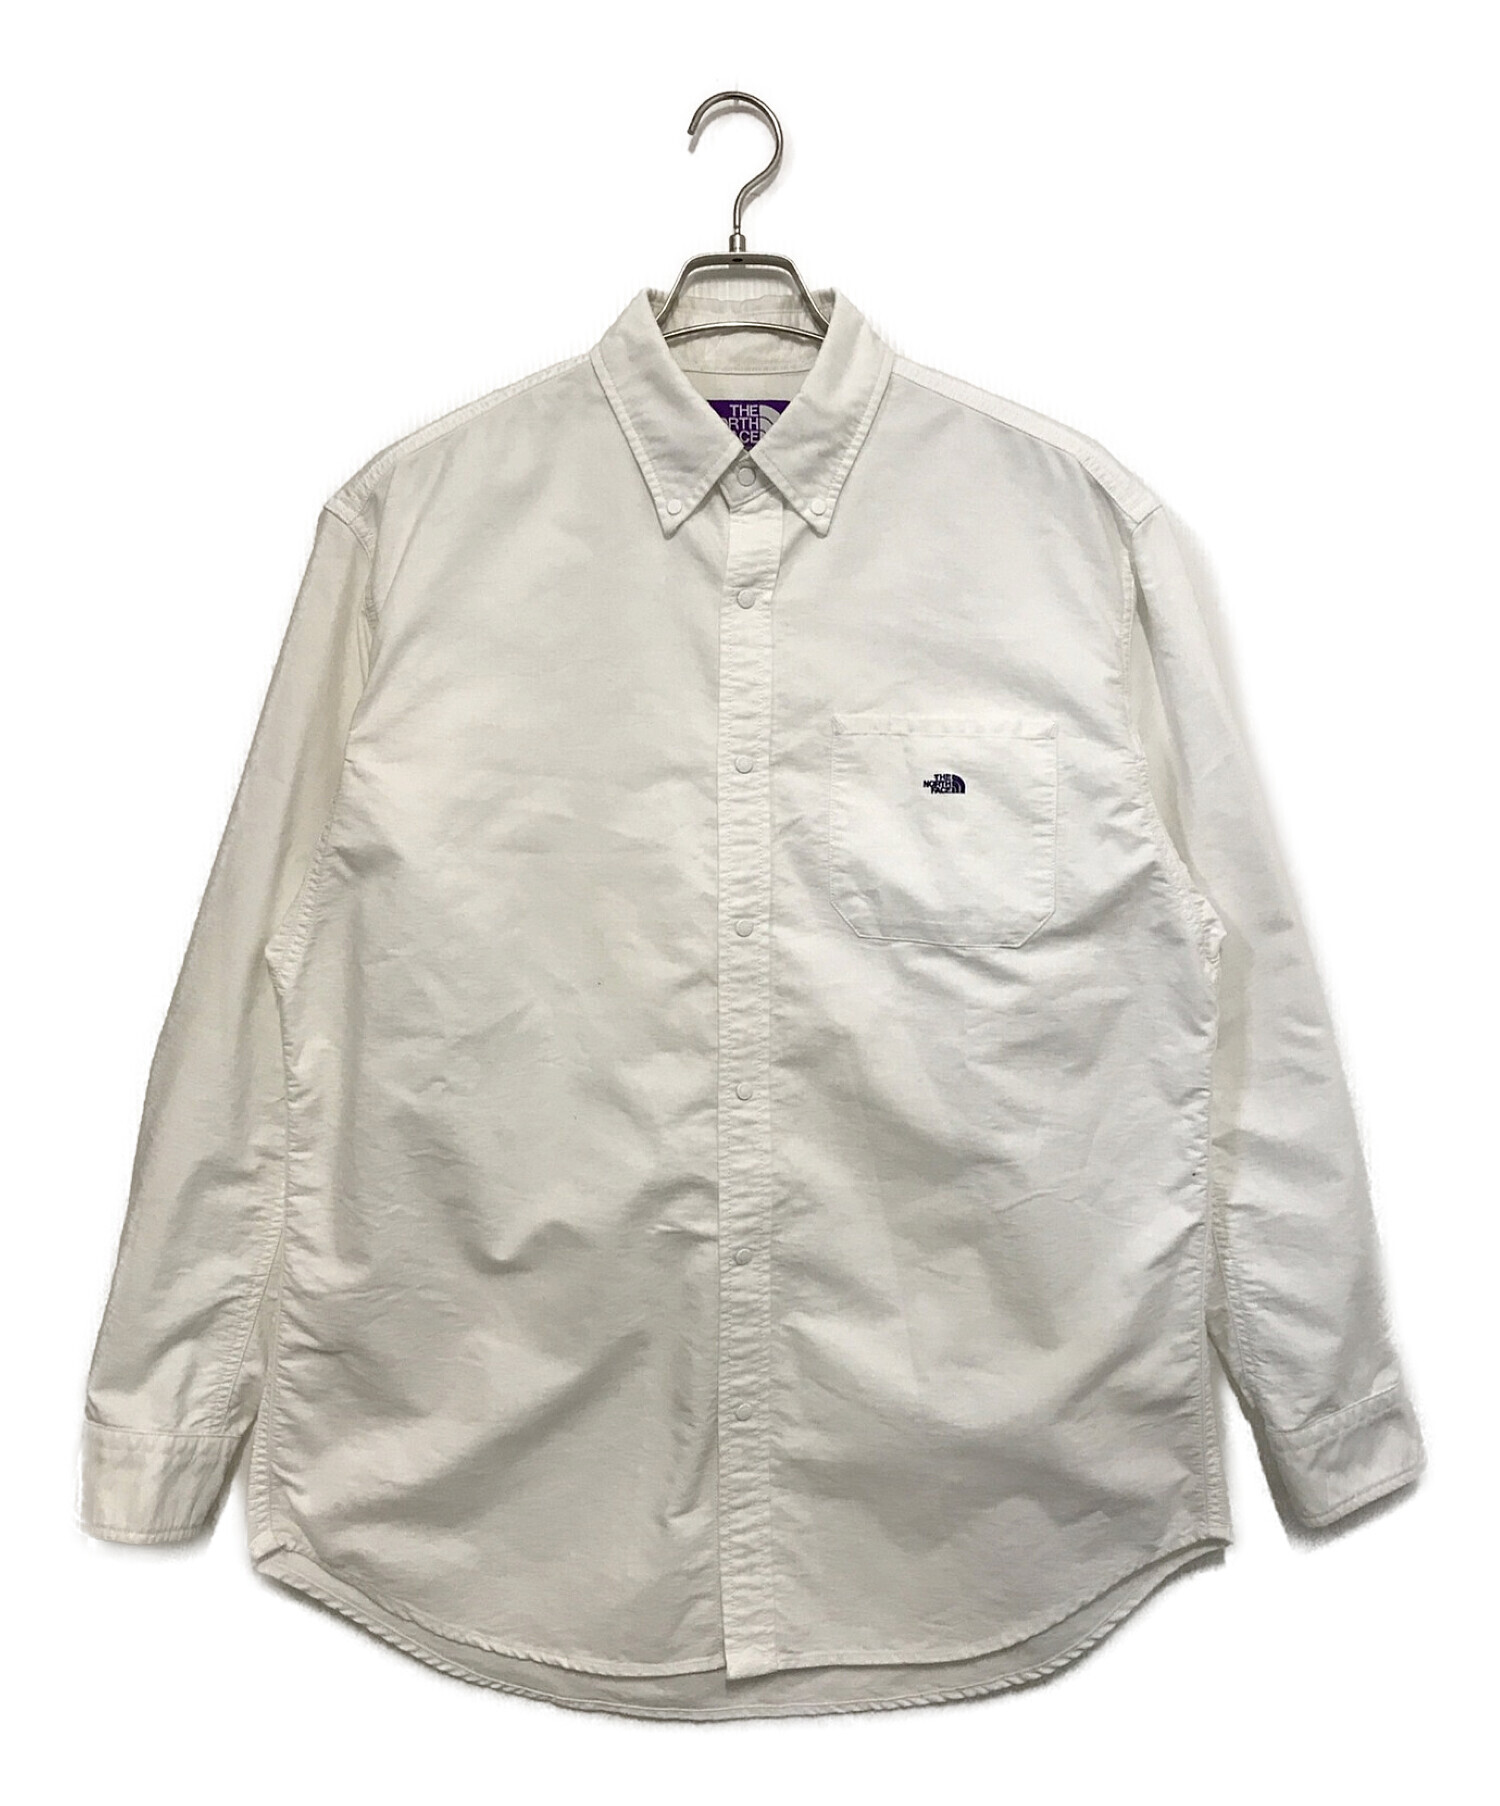 THE NORTHFACE PURPLELABEL (ザ ノースフェイス パープルレーベル) Cotton Polyester OX B.D.  Shirt ホワイト サイズ:M